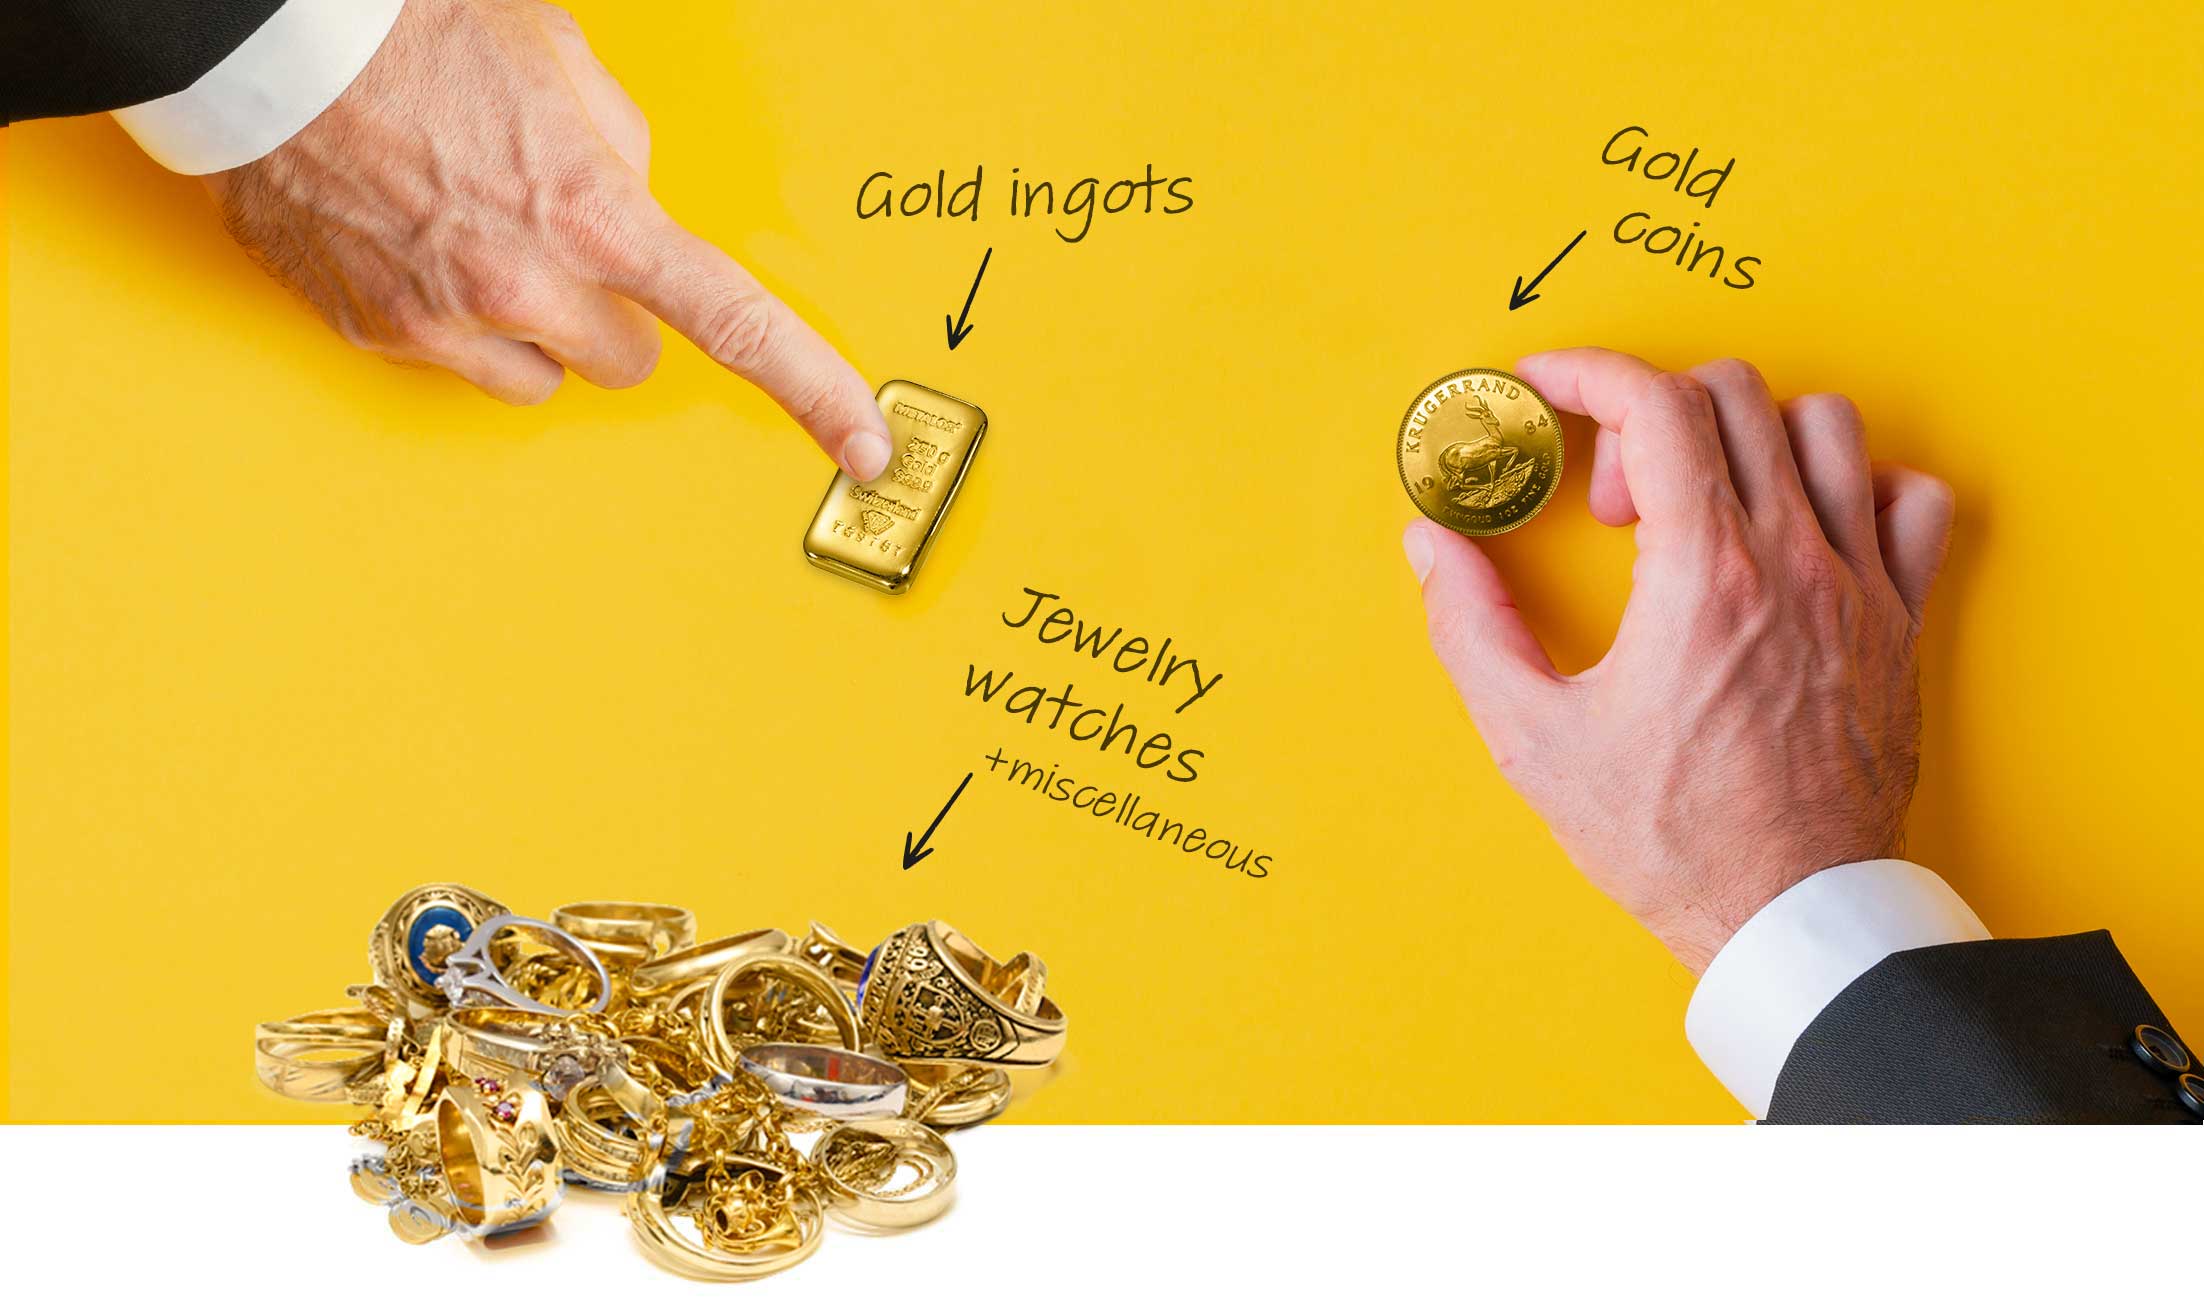 Rachat d'or et d'argent - Goud & Zilver terugkopen - Gold & Silver buyback